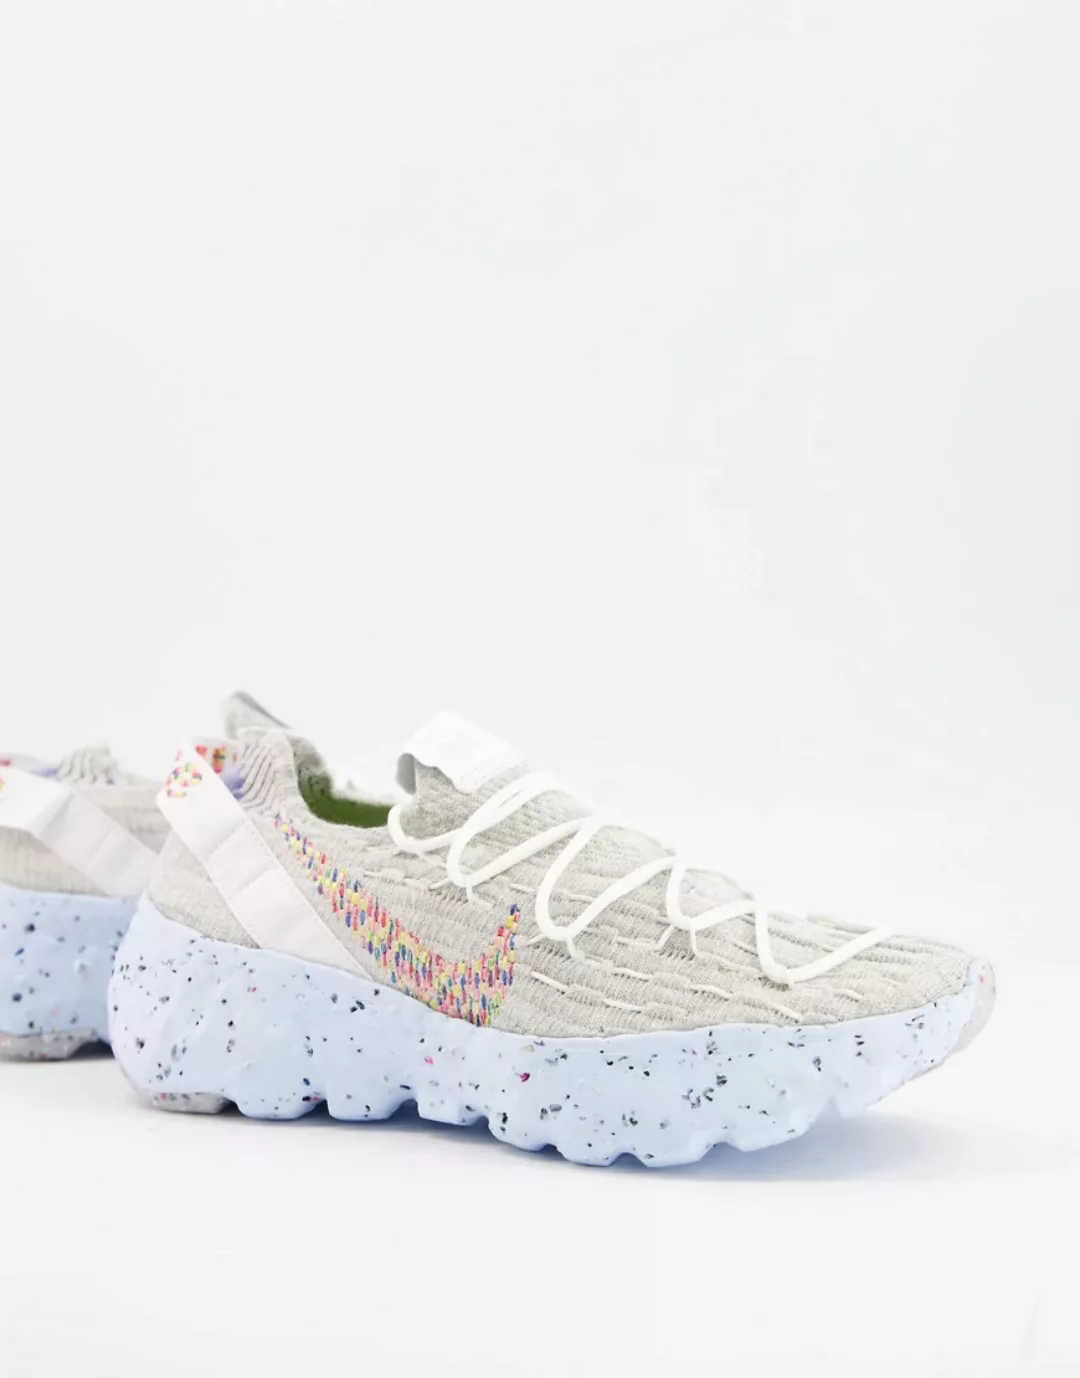 Nike – Space Hippie 04 Move to Zero – Sneaker in Summit-Weiß-Grau günstig online kaufen